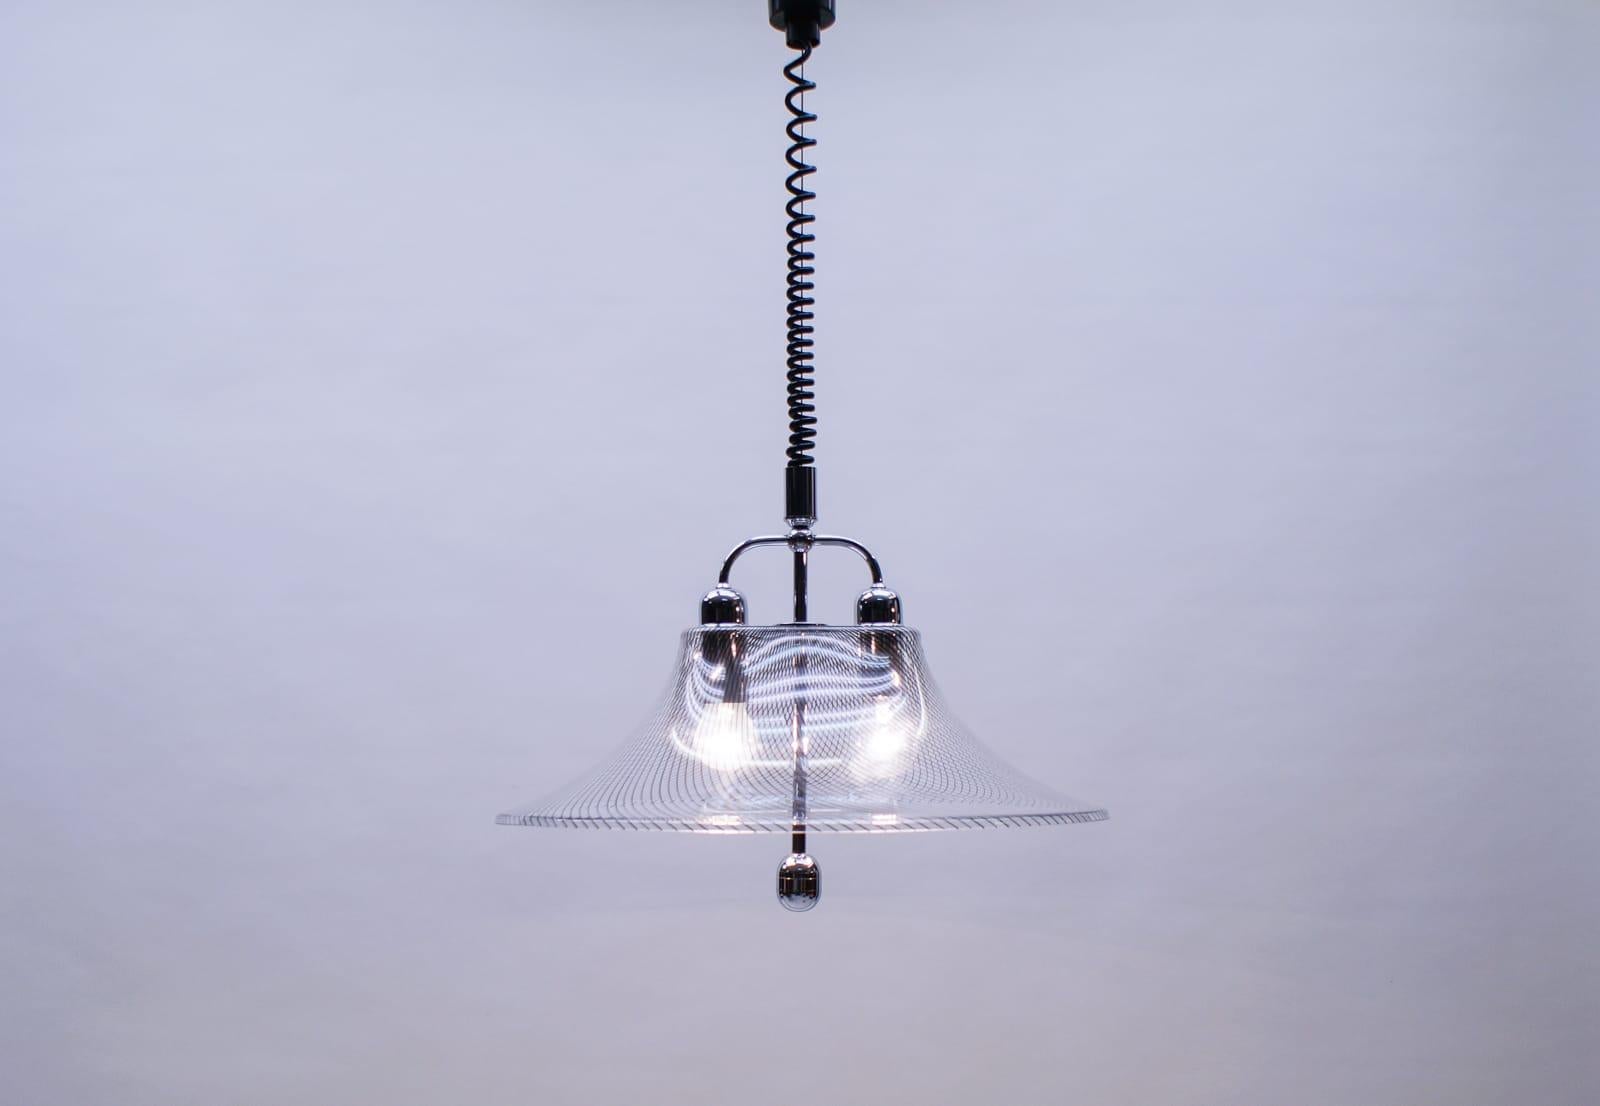 Sehr elegante gestreifte Acryl-Hängelampe von Edel-Acryl, 1970er Jahre

Höhenverstellbar 70-158cm.

Die aus massivem verchromtem Stahl gefertigte Leuchte wird mit 2 x E27 / E26 Edison-Schraubfassungen geliefert, ist verkabelt, funktionstüchtig